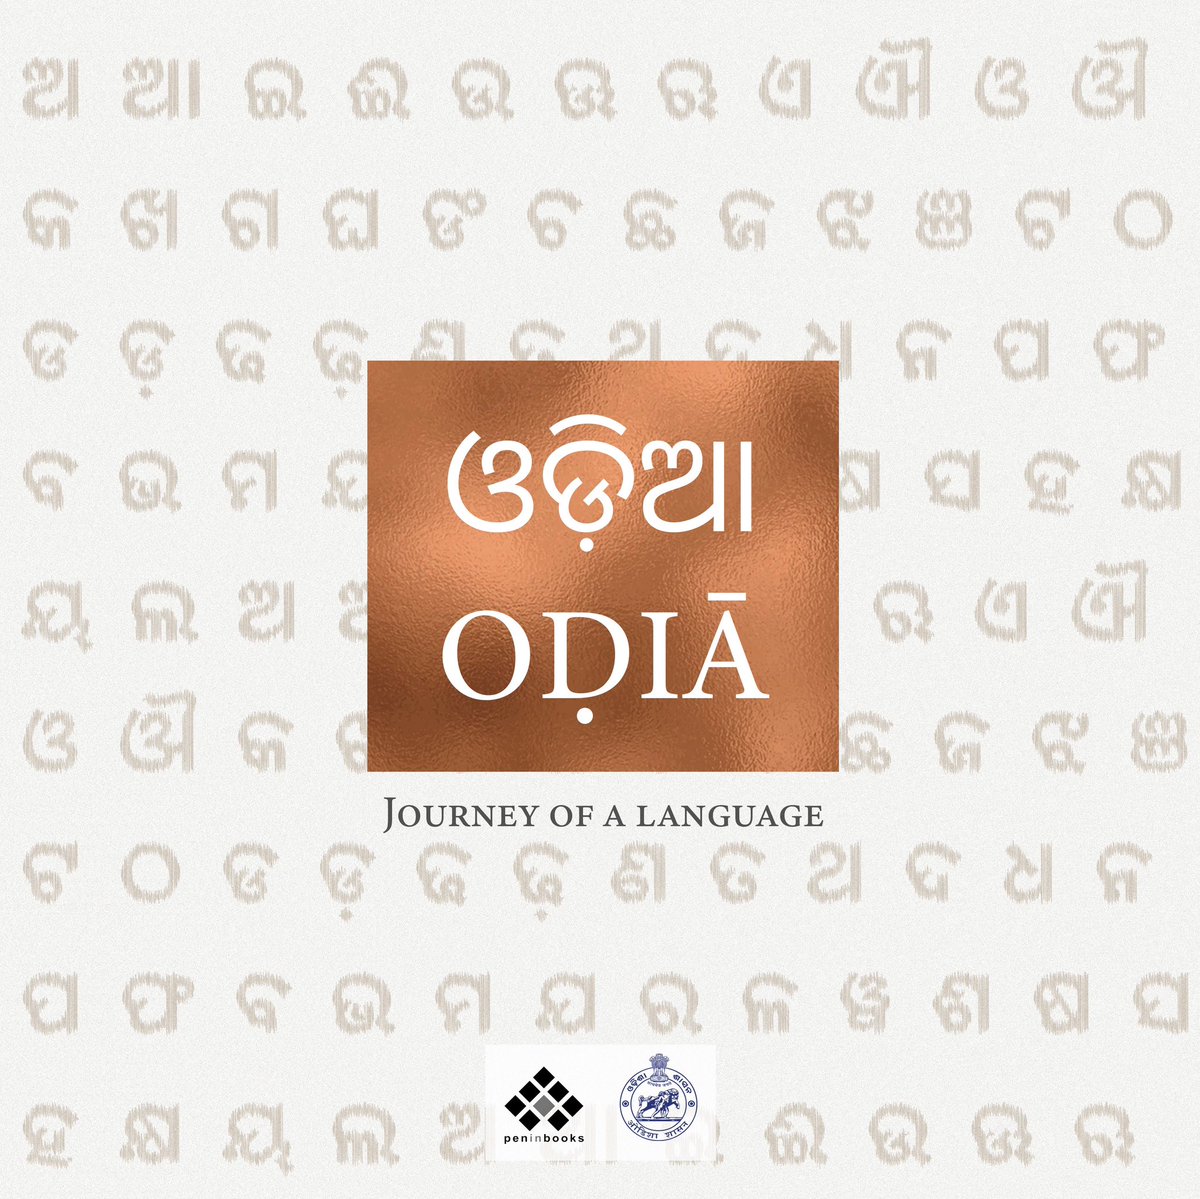 #AmazonSale #OdiaJourneyOfaLanguage ଓଡ଼ିଆ ଭାଷାର ବିକାଶ ଓ ପ୍ରଗତିକୁ ନେଇ ପ୍ରସ୍ତୁତ ନାନାଦି ବିରଳ ଚିତ୍ର, ନଥି ଓ ତଥ୍ୟ ସମ୍ବଳିତ ୨.୫ କିଲୋଗ୍ରାମ୍‌ ଓଜନ ବିଶିଷ୍ଟ ପ୍ରାୟ ୨୫୦ ପୃଷ୍ଠାର ସୁଦୃଶ୍ୟ ଦ୍ବିଭାଷୀ ଚିତ୍ରପୋଥି 'ଓଡ଼ିଆ: ଜର୍ଣି ଅଫ୍‌ ଏ ଲାଙ୍ଗୁଏଜ୍' This book is an ode to the rich legacy of the Odia…